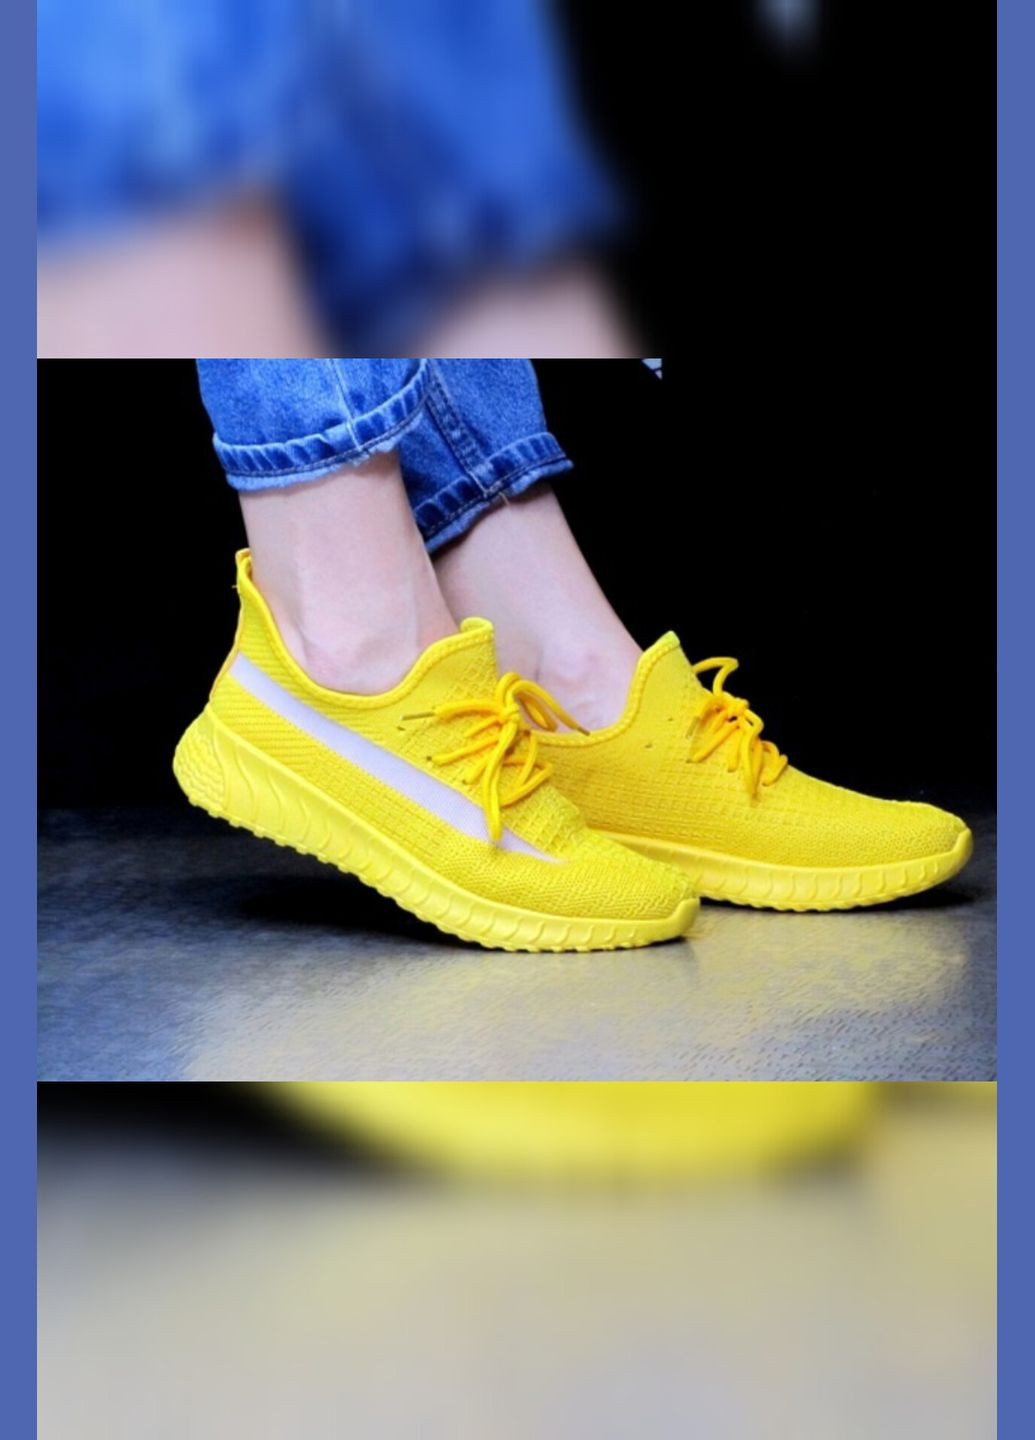 Жовті літні жіночі жовті літні текстильні спортивні текстильні жовтого кольору Viki кросівки